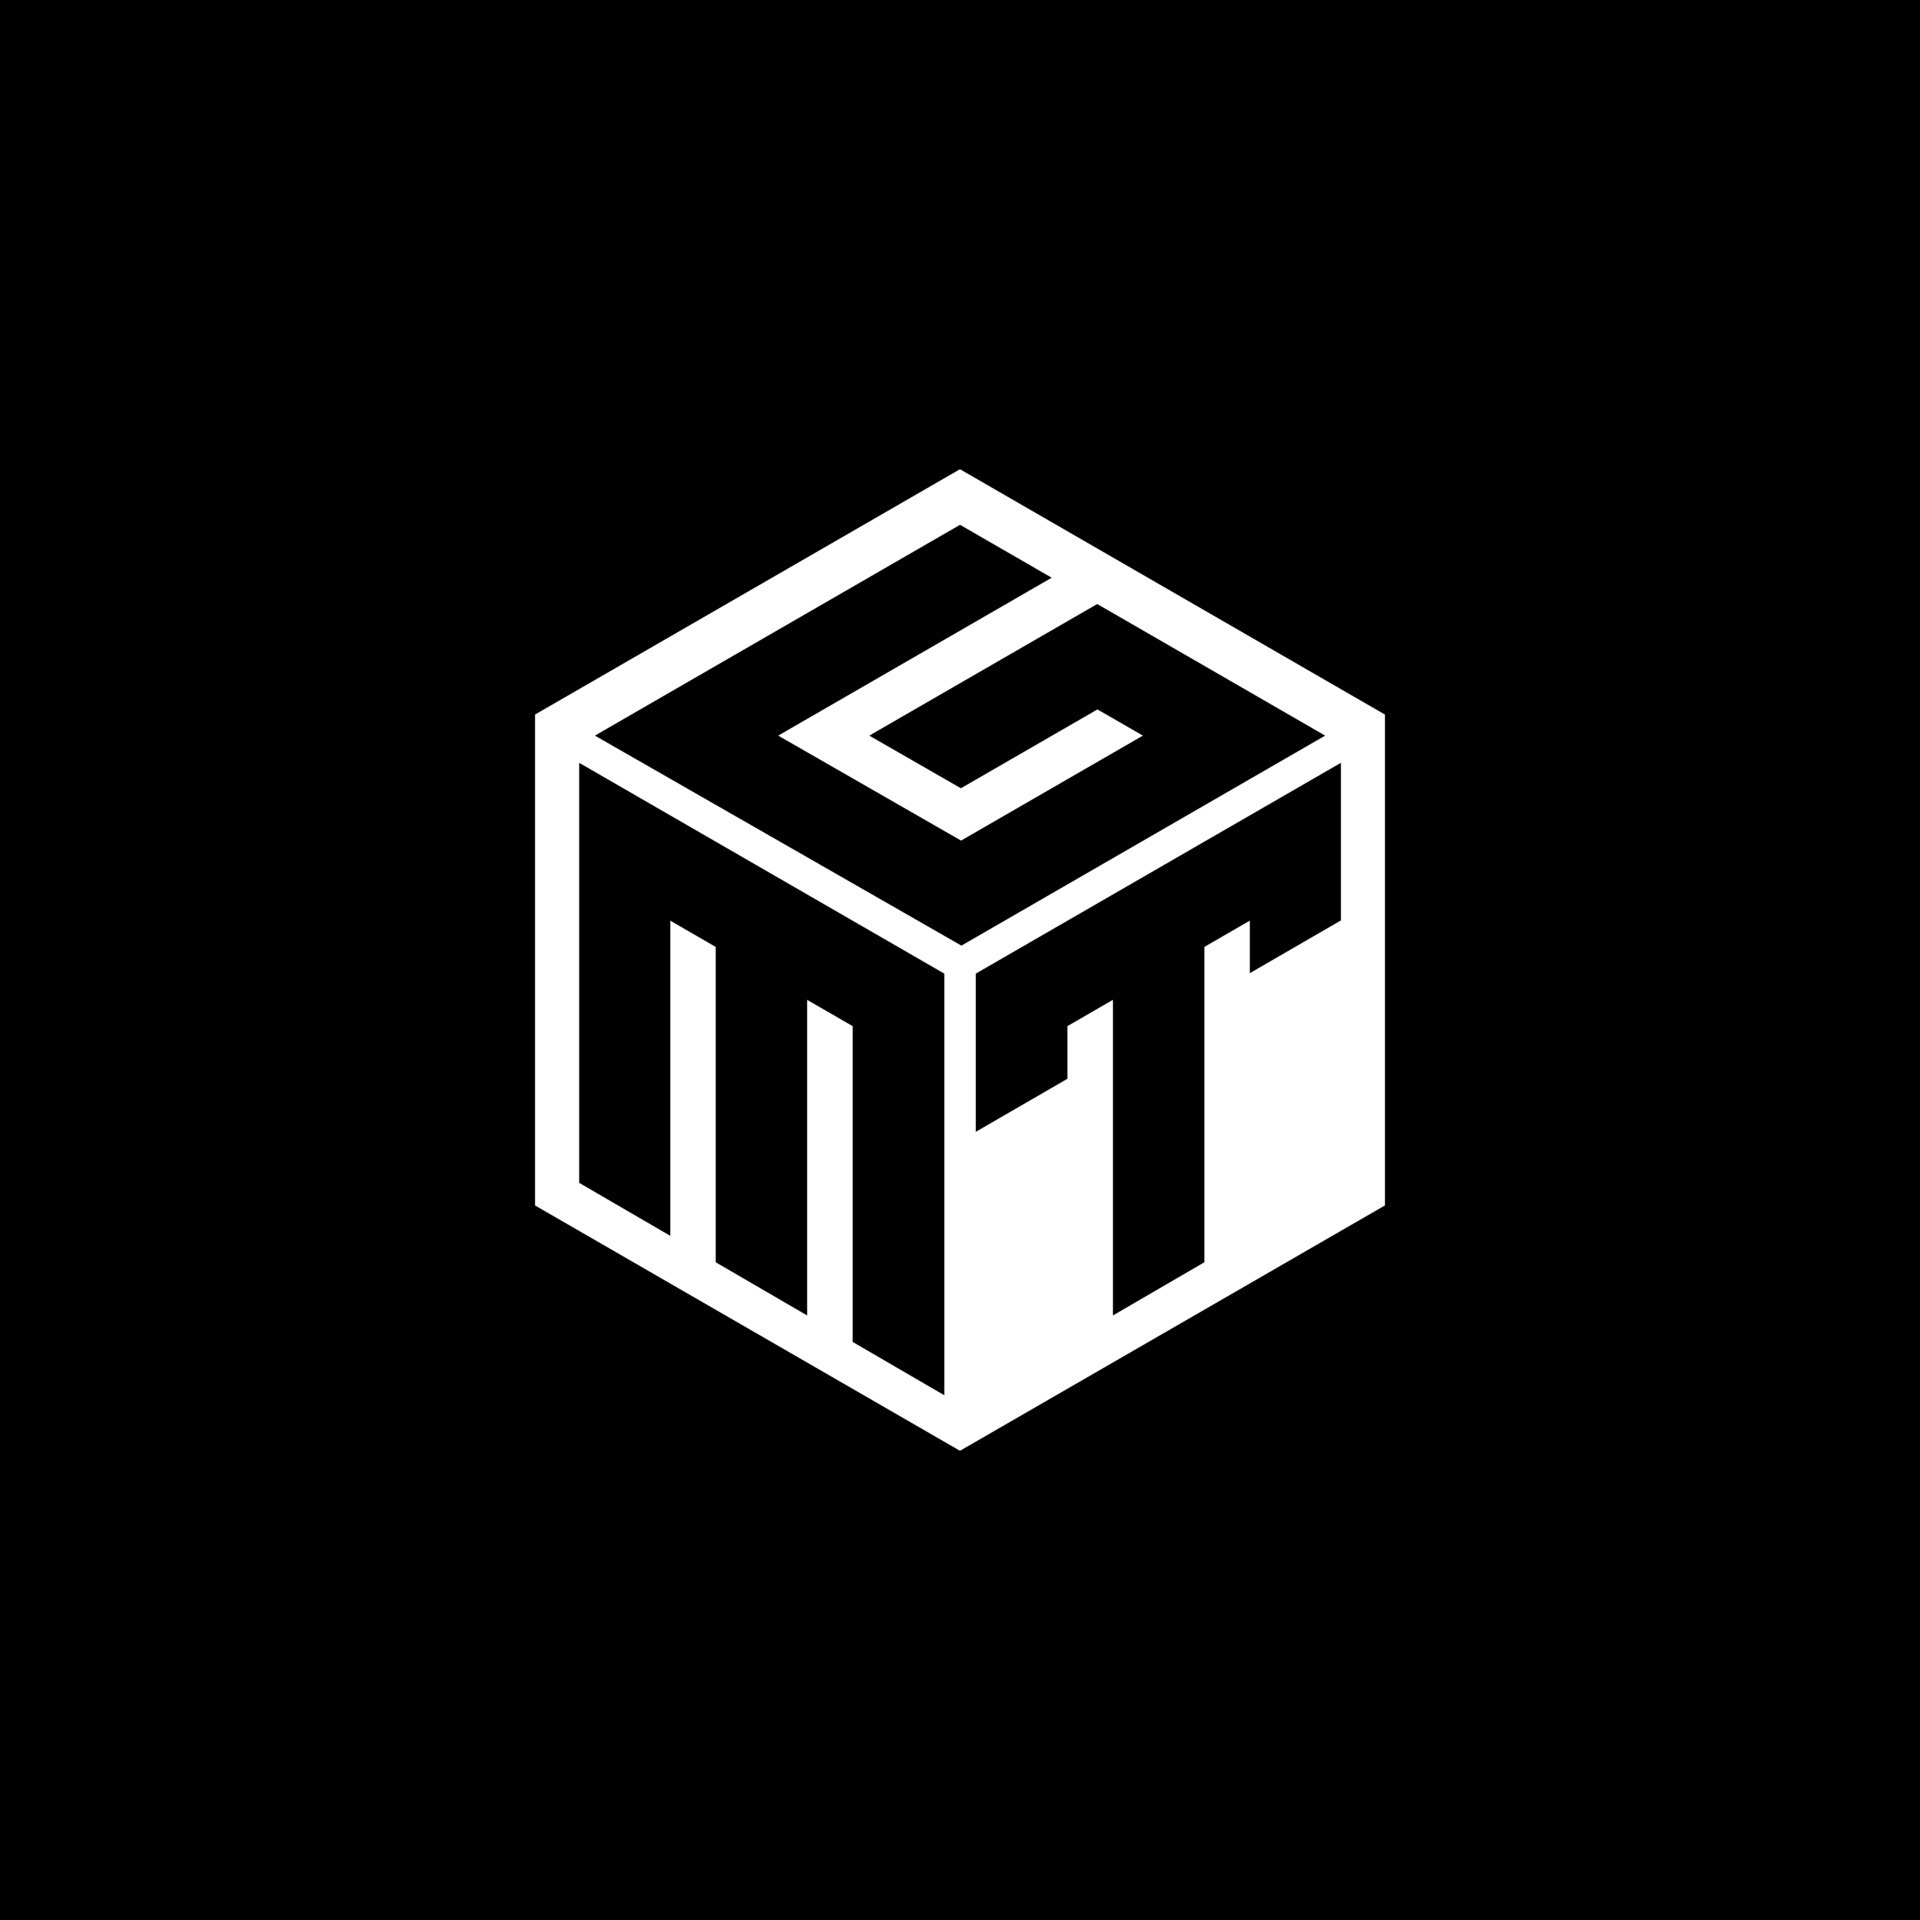 Logo chữ MTG được thiết kế độc đáo và phù hợp với chủ đề trò chơi này. Nếu bạn yêu thích Magic: The Gathering và muốn tìm hiểu thêm về logo độc đáo này, hãy xem ngay hình ảnh liên quan để đắm chìm trong thế giới của trò chơi này.